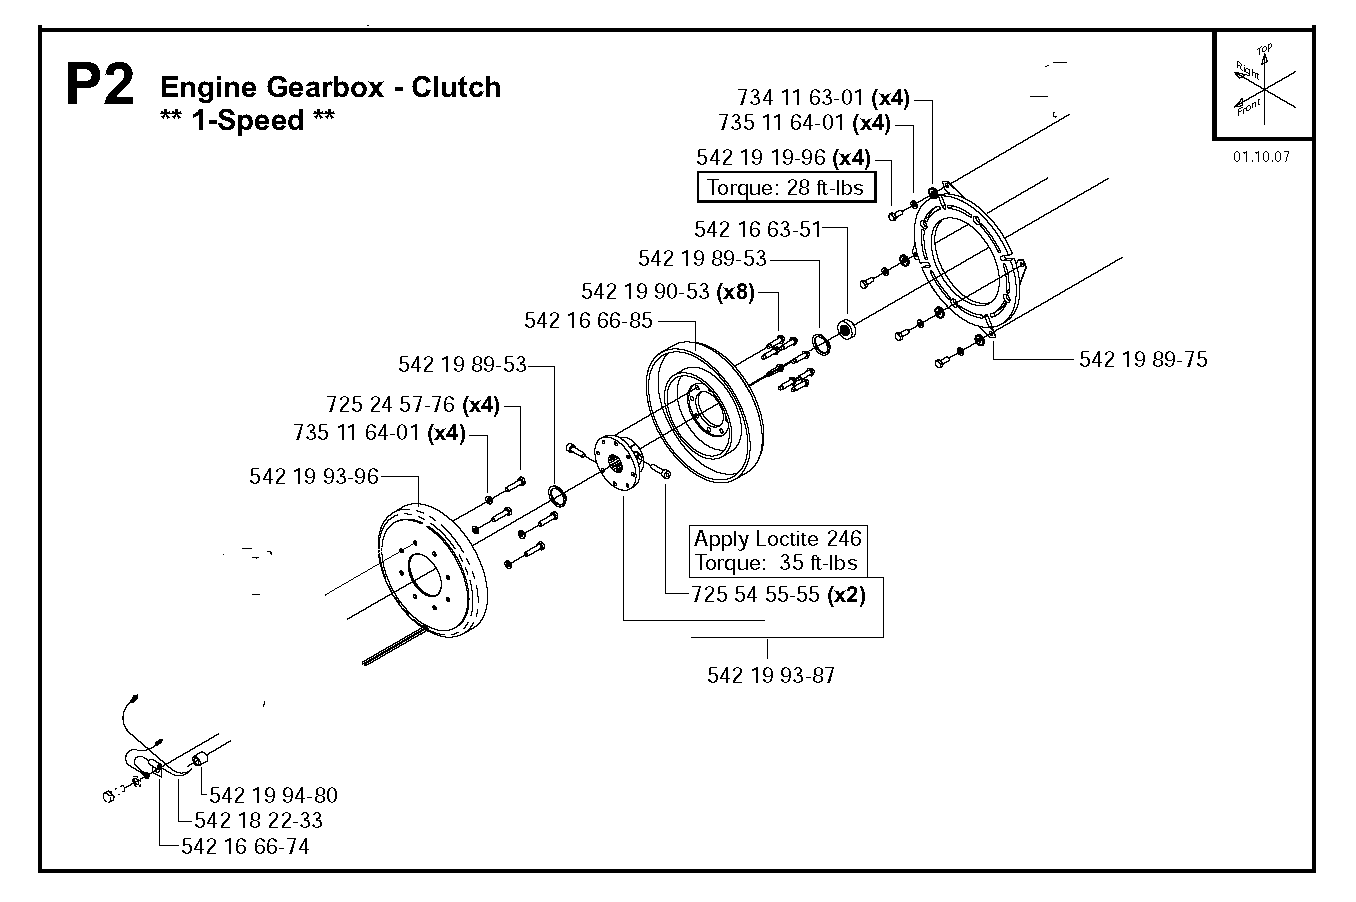 Engine gearbox - clutch